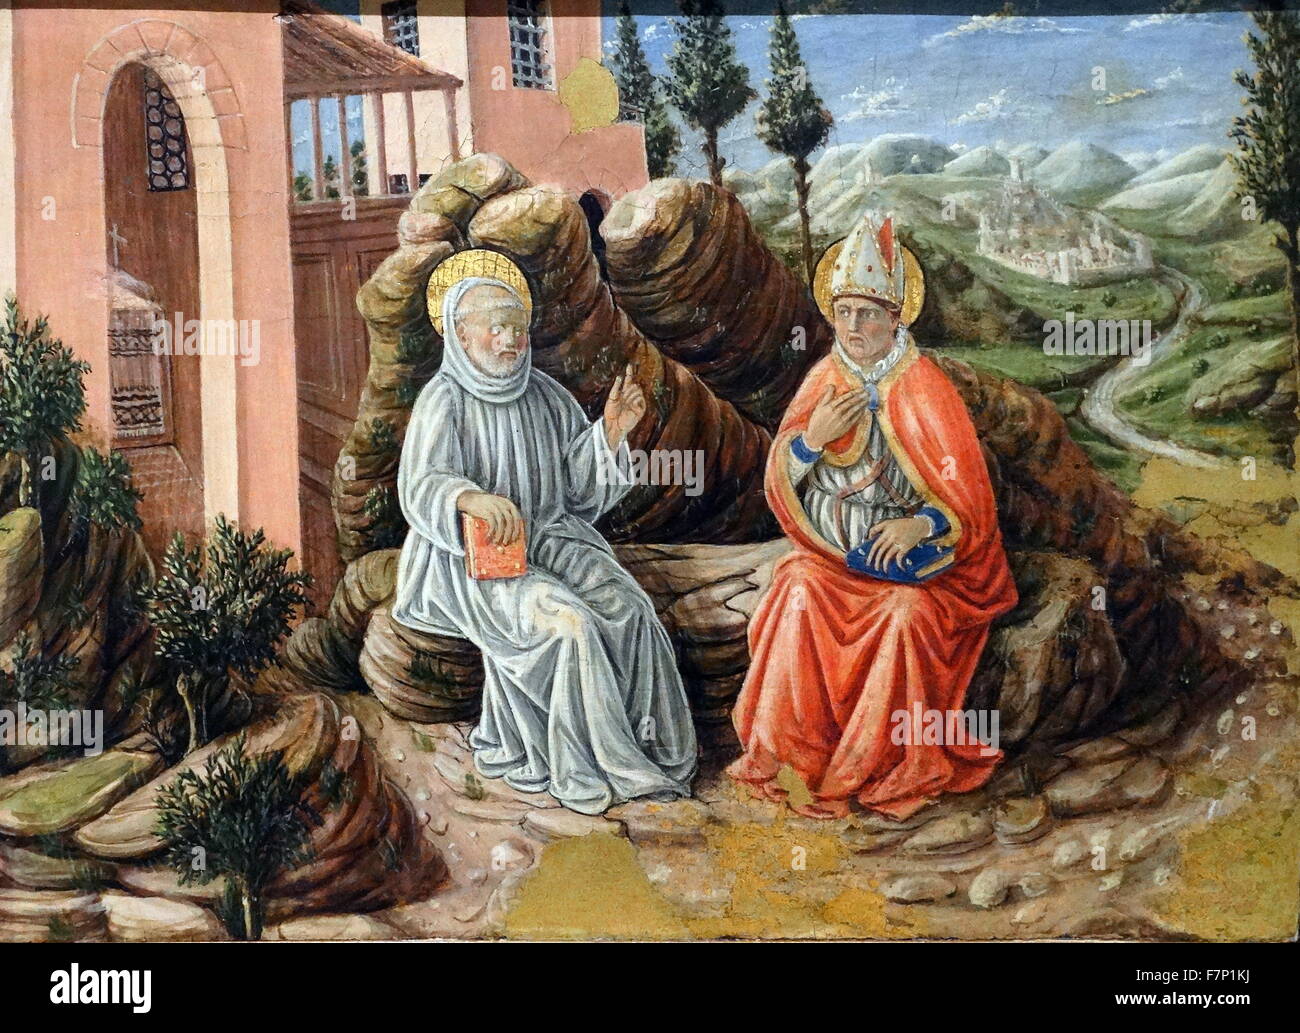 La peinture intitulée 'St. Benoît Sabi parle' de Giovanni Boccati (1420-1480) un peintre italien pendant le 15ème siècle. Datée 1473 Banque D'Images